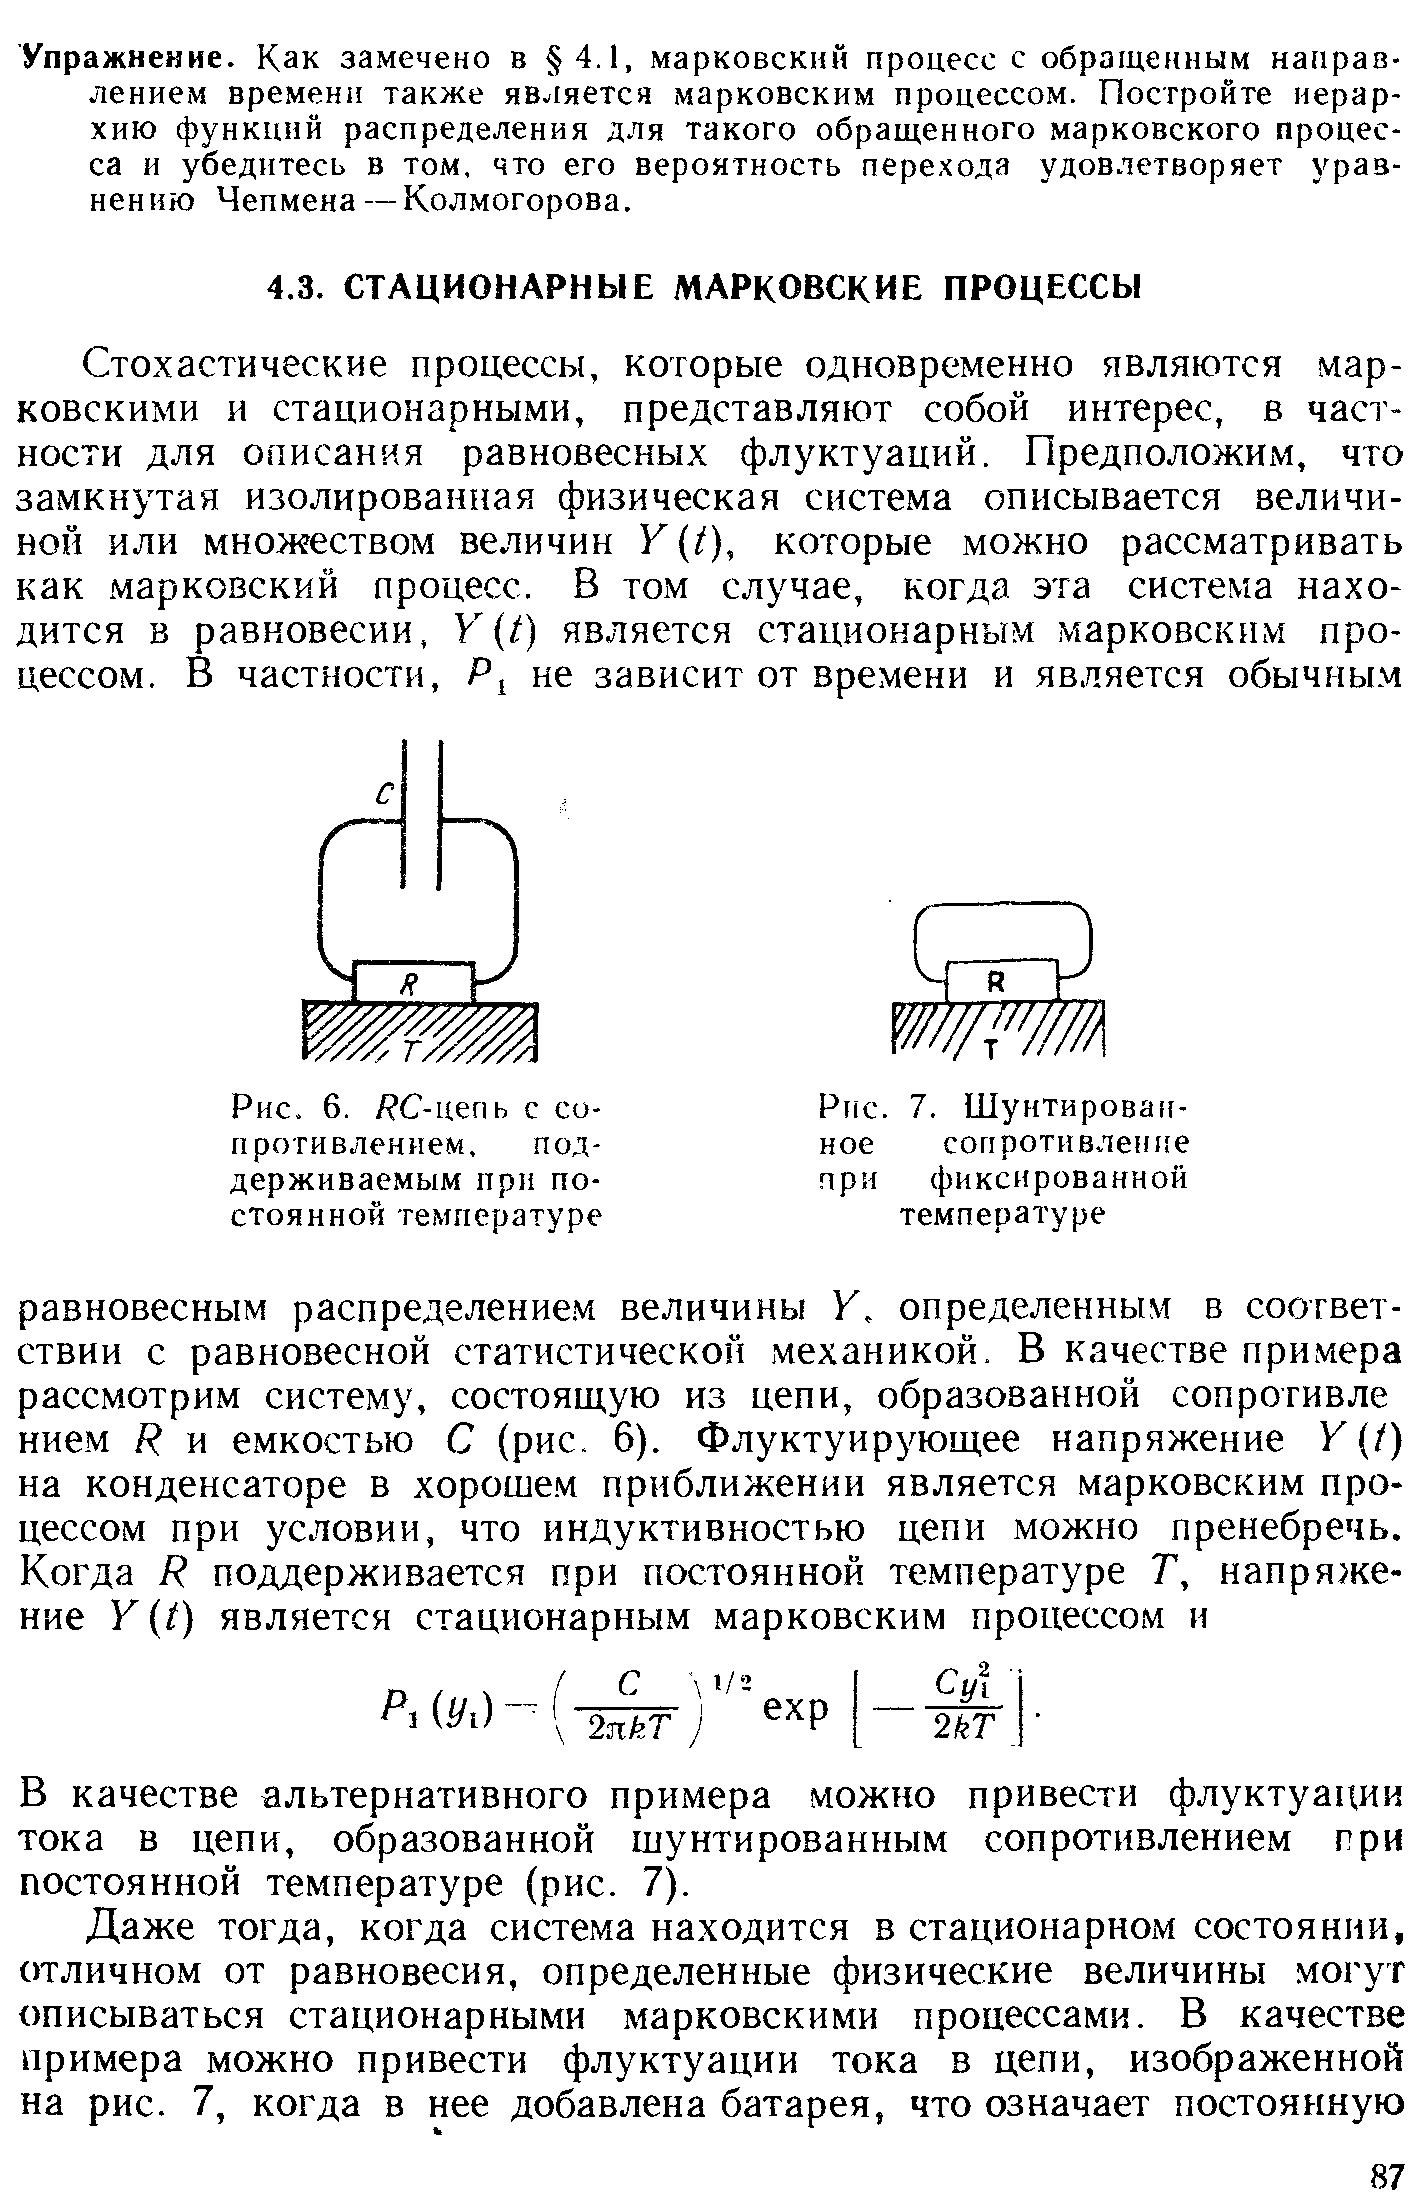 В качестве альтернативного примера можно привести флуктуации тока в цепи, образованной шунтированным сопротивлением при постоянной температуре (рис. 7).